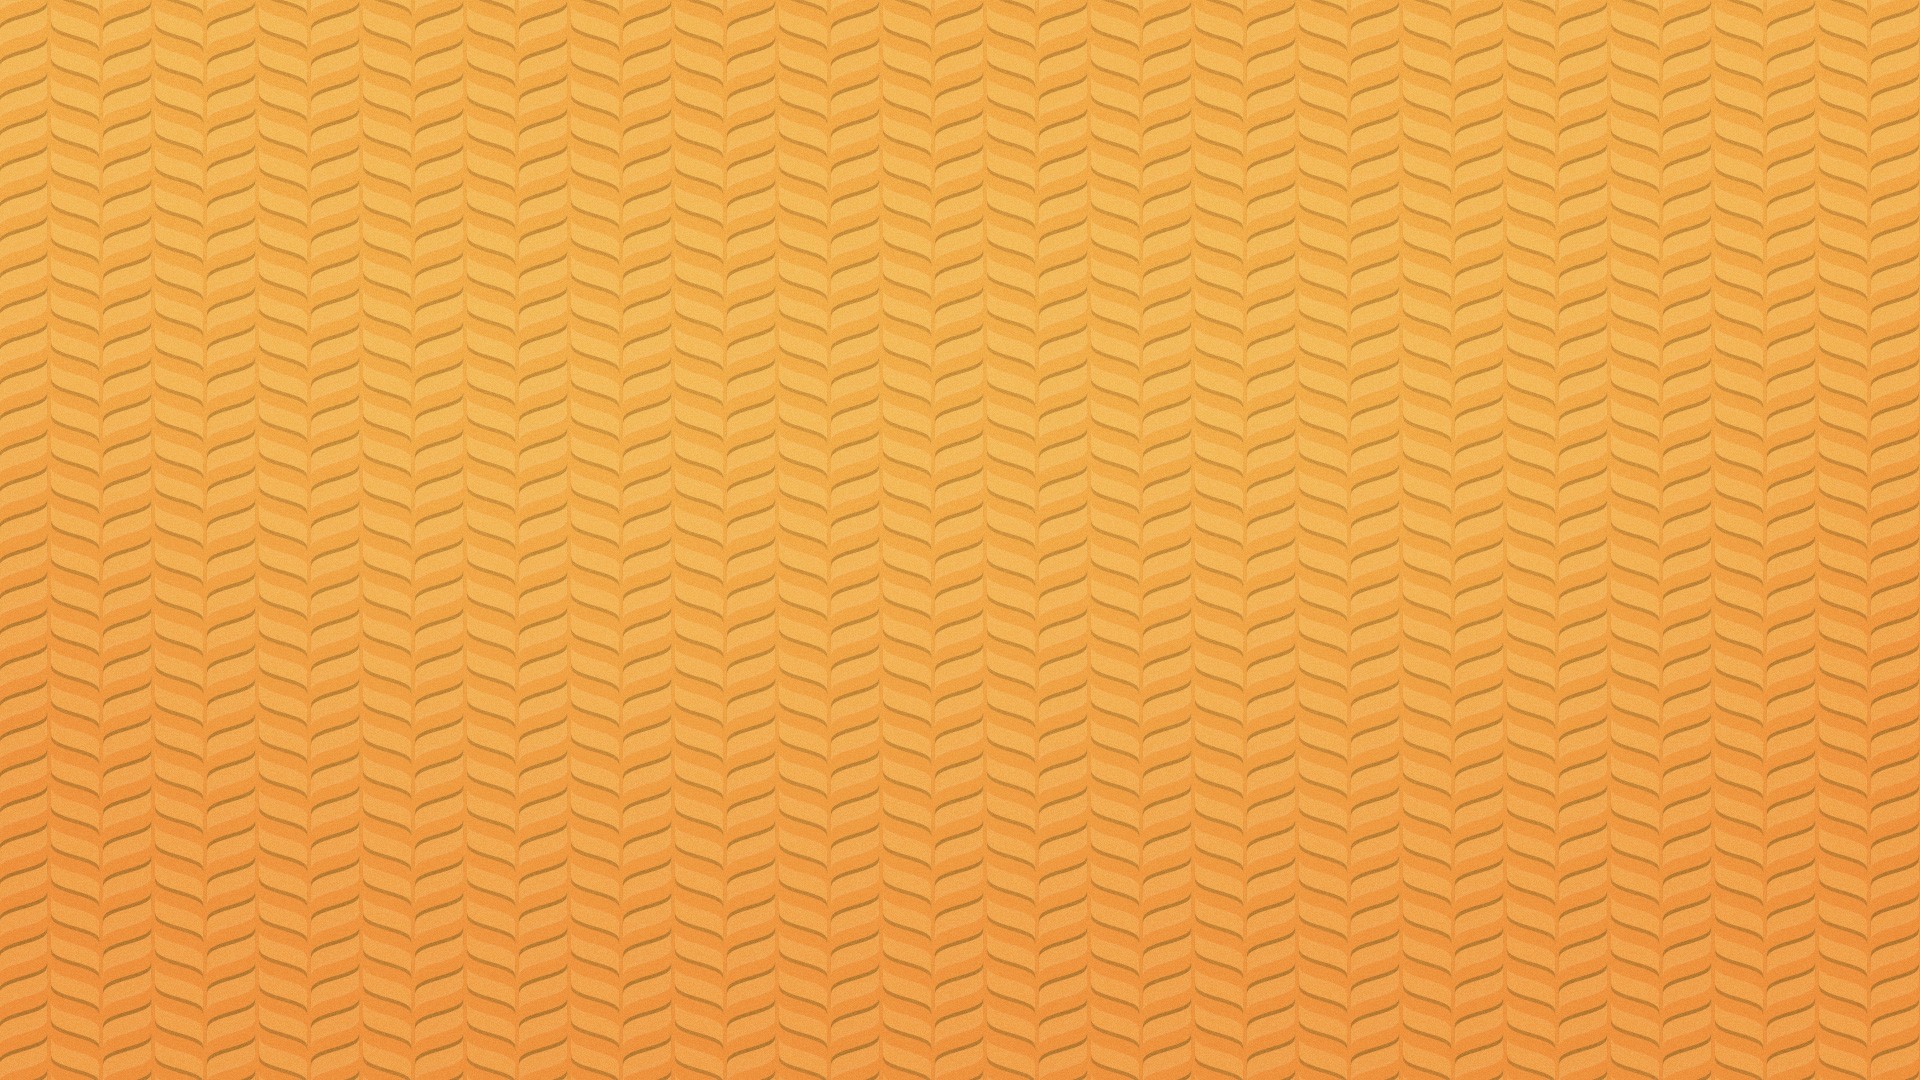 General 1920x1080 pattern texture minimalism orange background